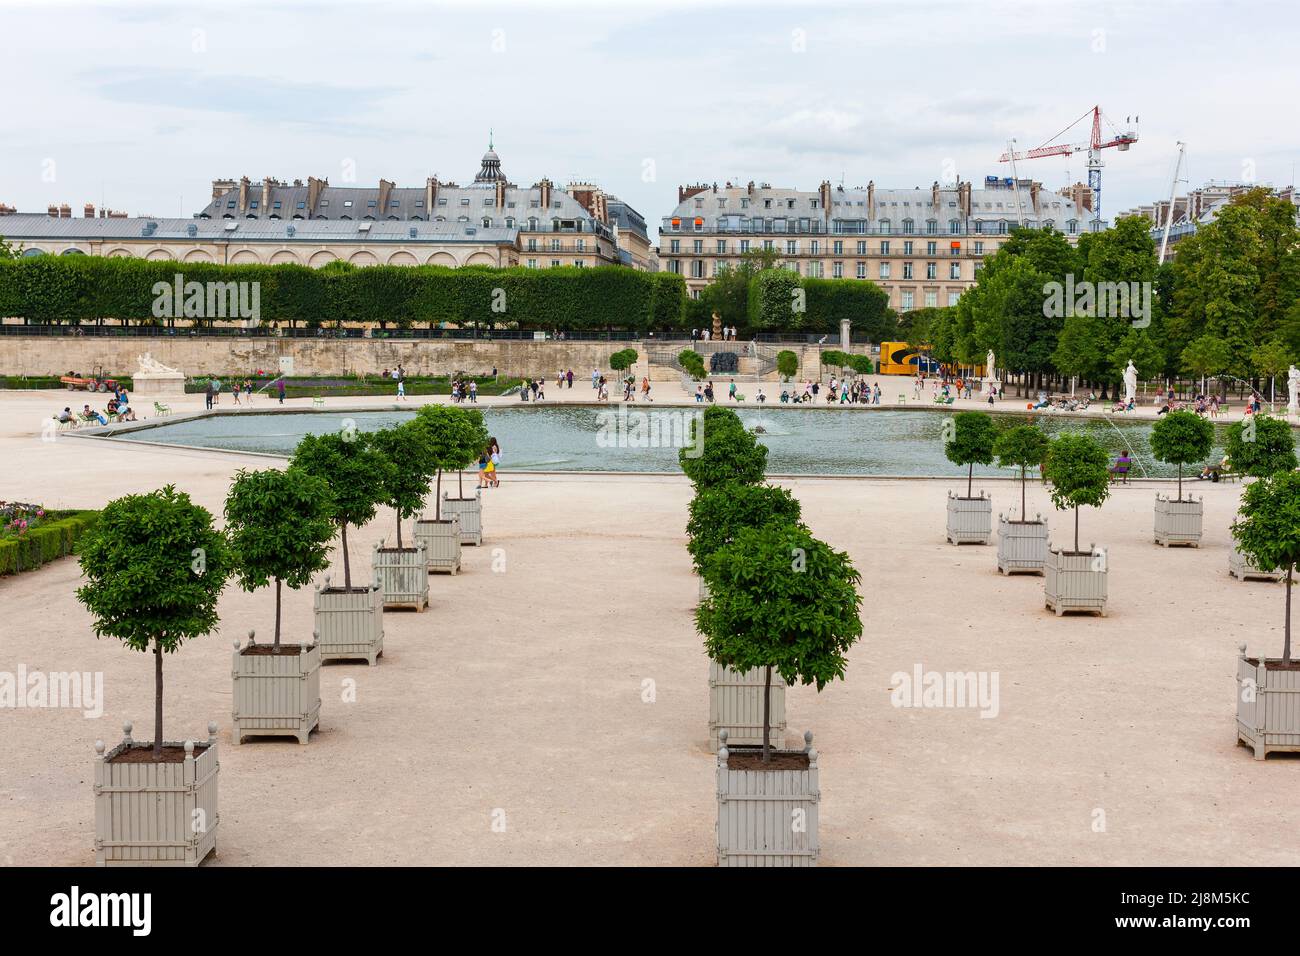 Parigi, Francia - 21 luglio 2010 : Jardin des Tuileries e Bassin ottagonal. Tuileries Giardino contenente uno stagno a otto lati. Foto Stock